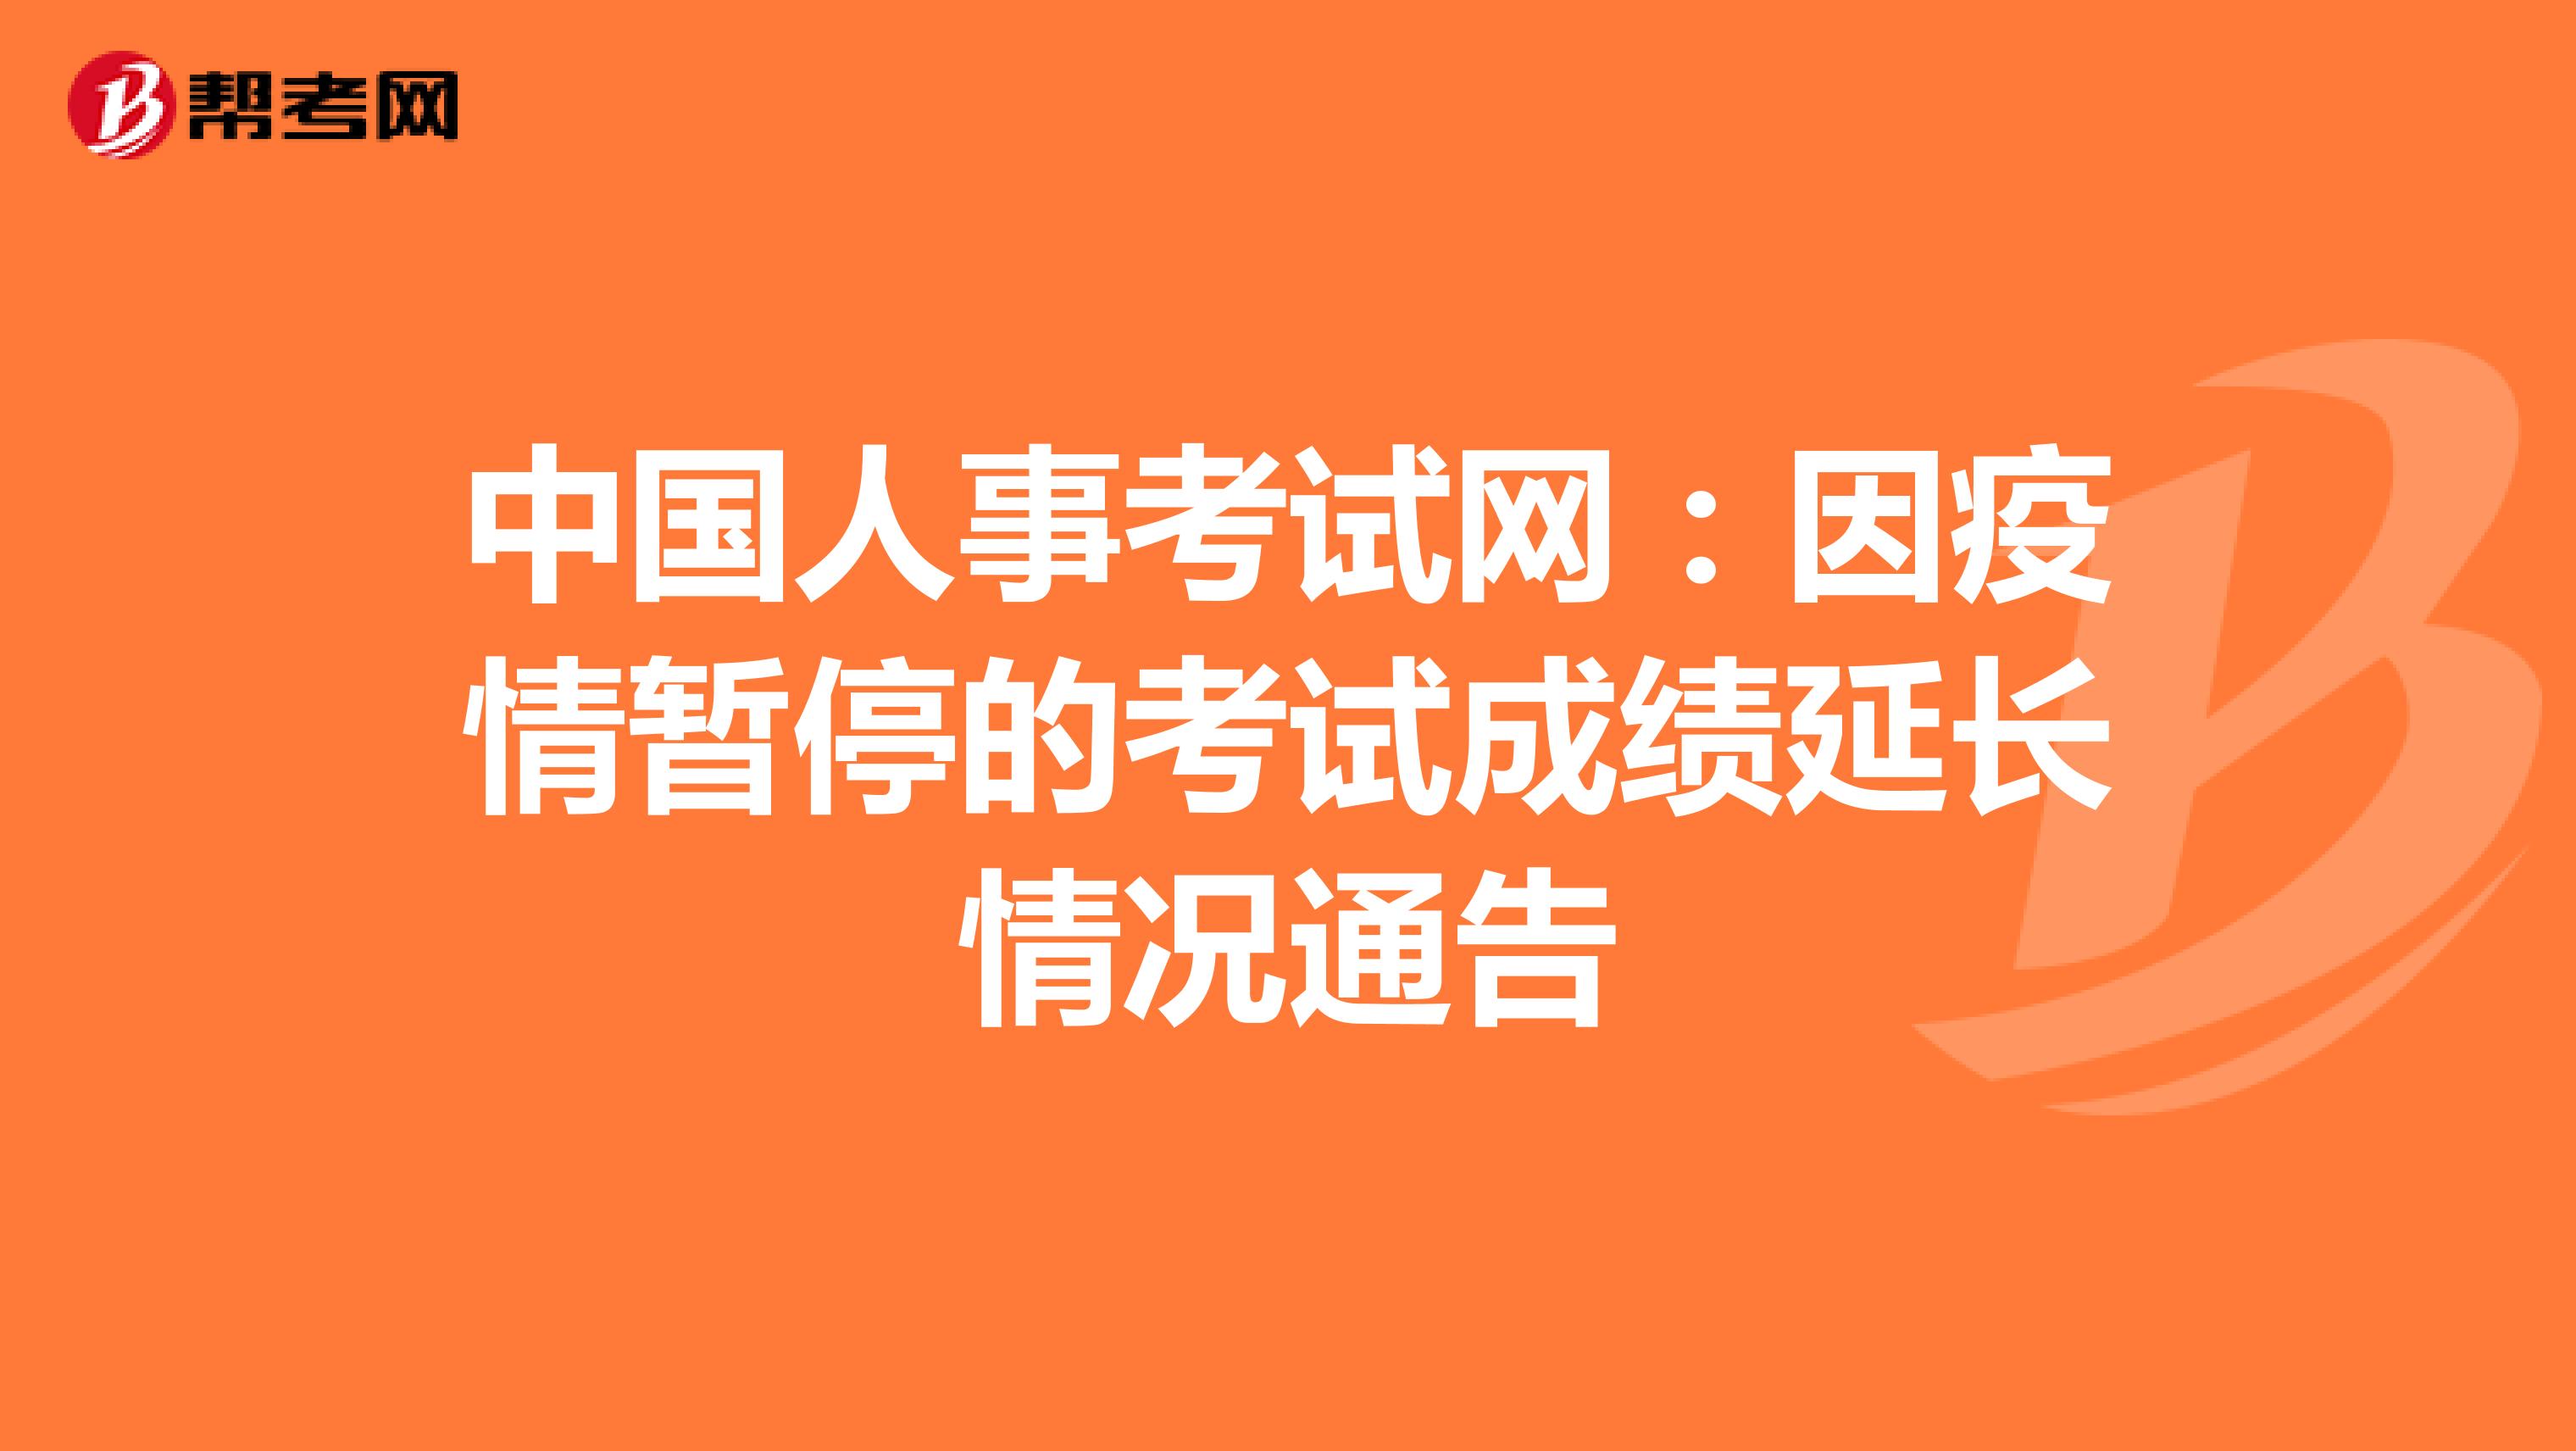 中国人事考试网：因疫情暂停的考试成绩延长情况通告